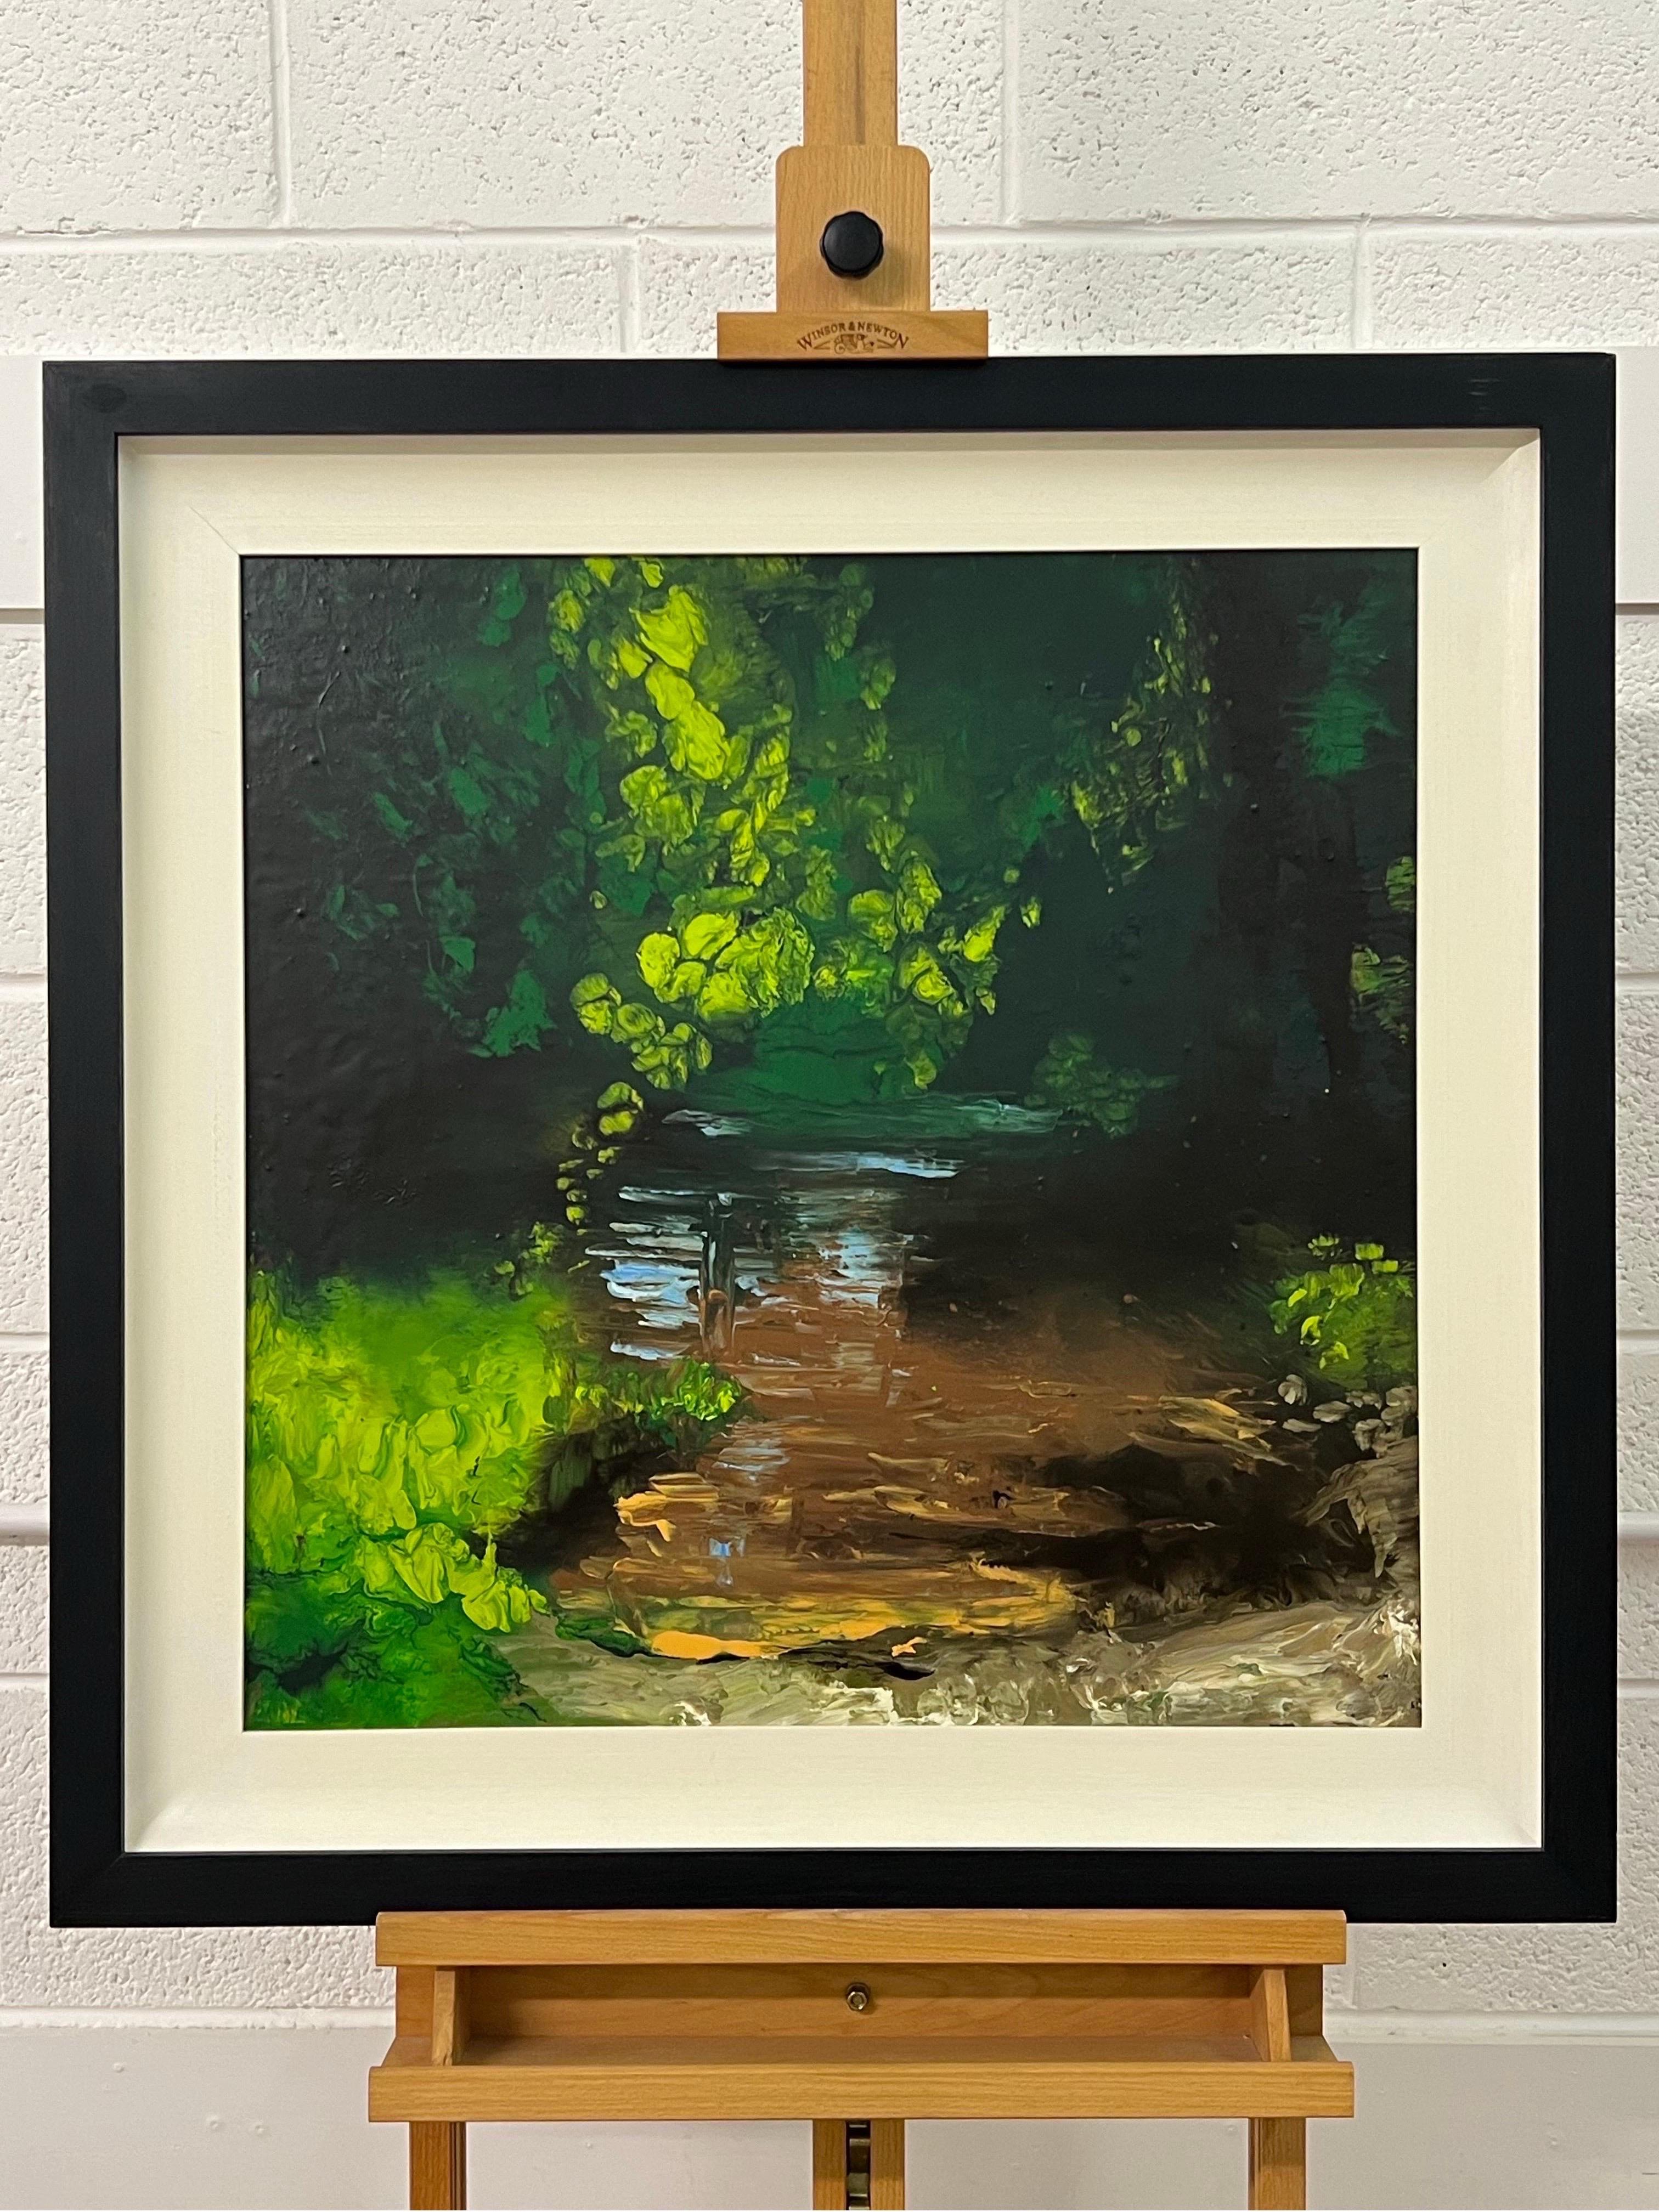 Impressionistische englische Flusslandschaft Original Ölgemälde von britischem Künstler. Ein matt lackiertes Mixed-Media-Kunstwerk auf tiefgezogener Leinwand, das die schimmernden Reflexe des Sonnenlichts auf der Wasseroberfläche einfängt. Eine